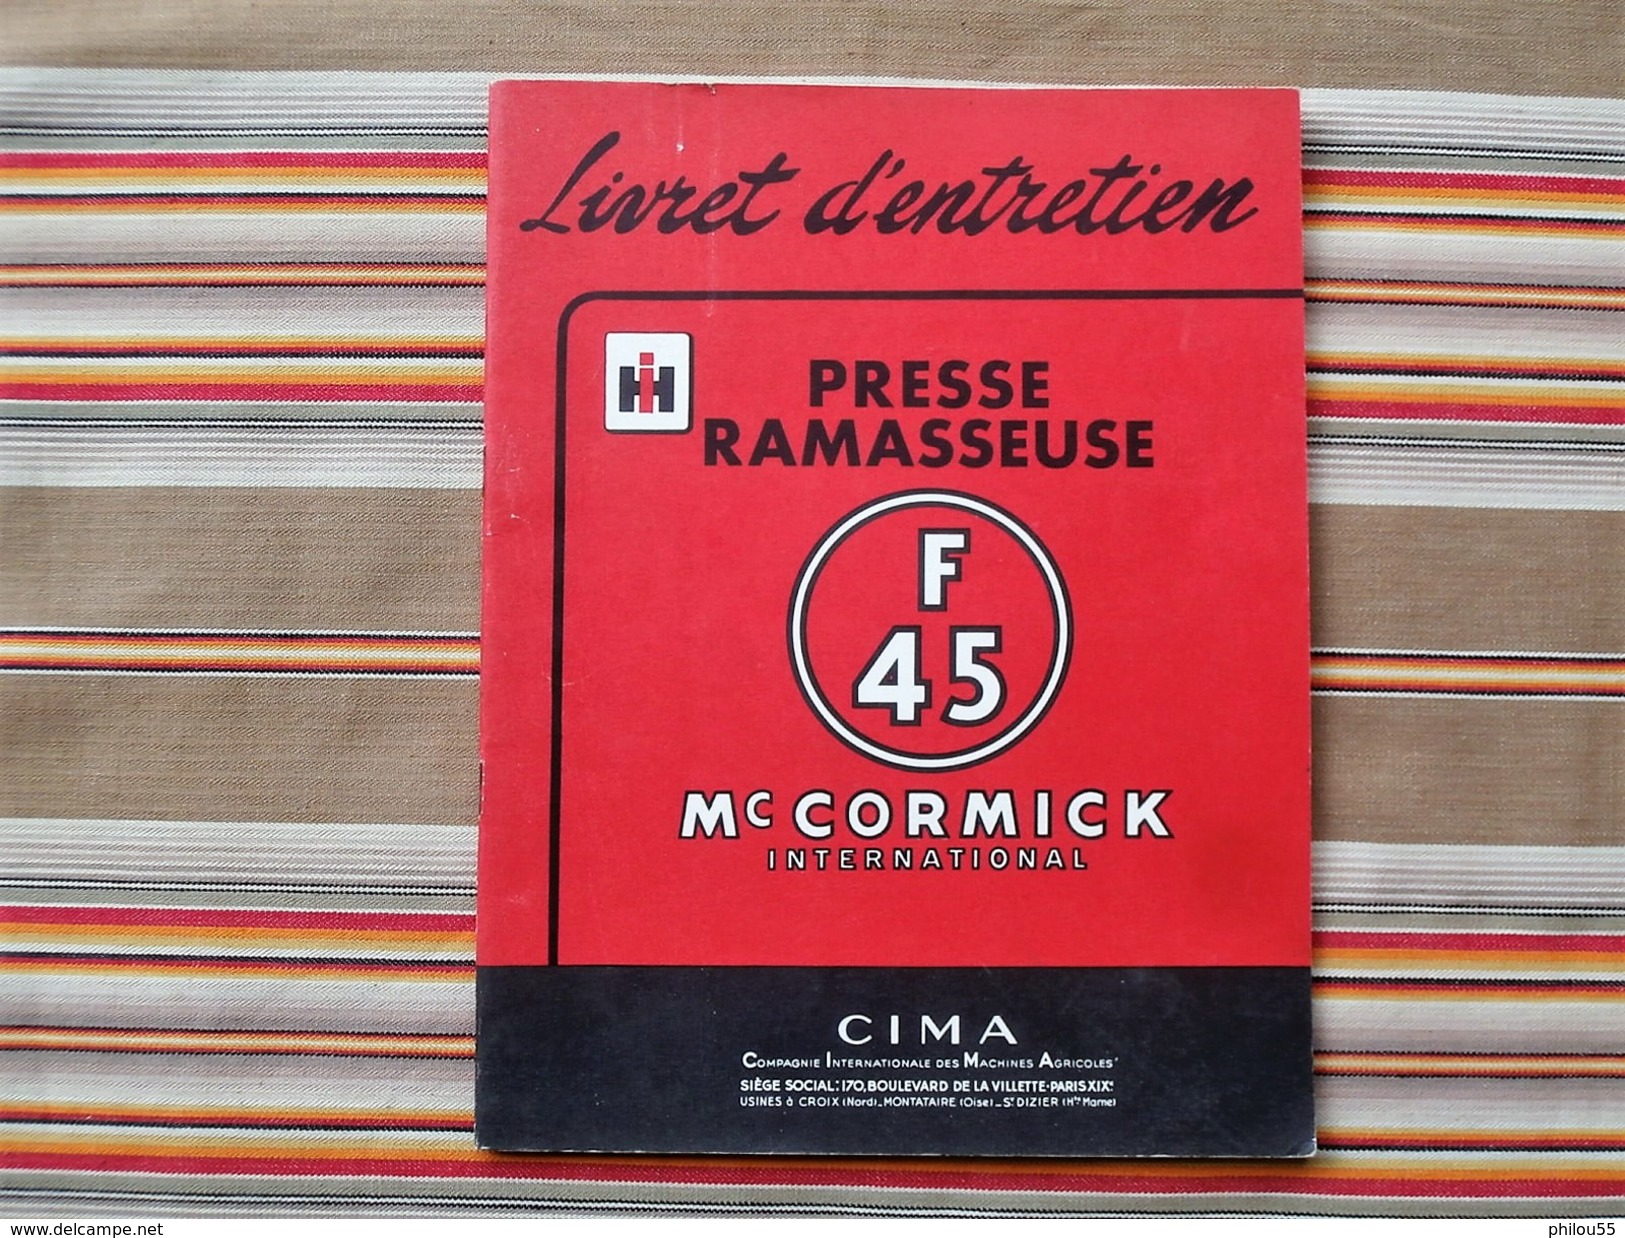 75 PARIS 19e  INTERNATIONAL HARVESTER  MC CORMICK Livret D Entretien PRESSE RAMASSEUSE F45 1955 - Tracteurs